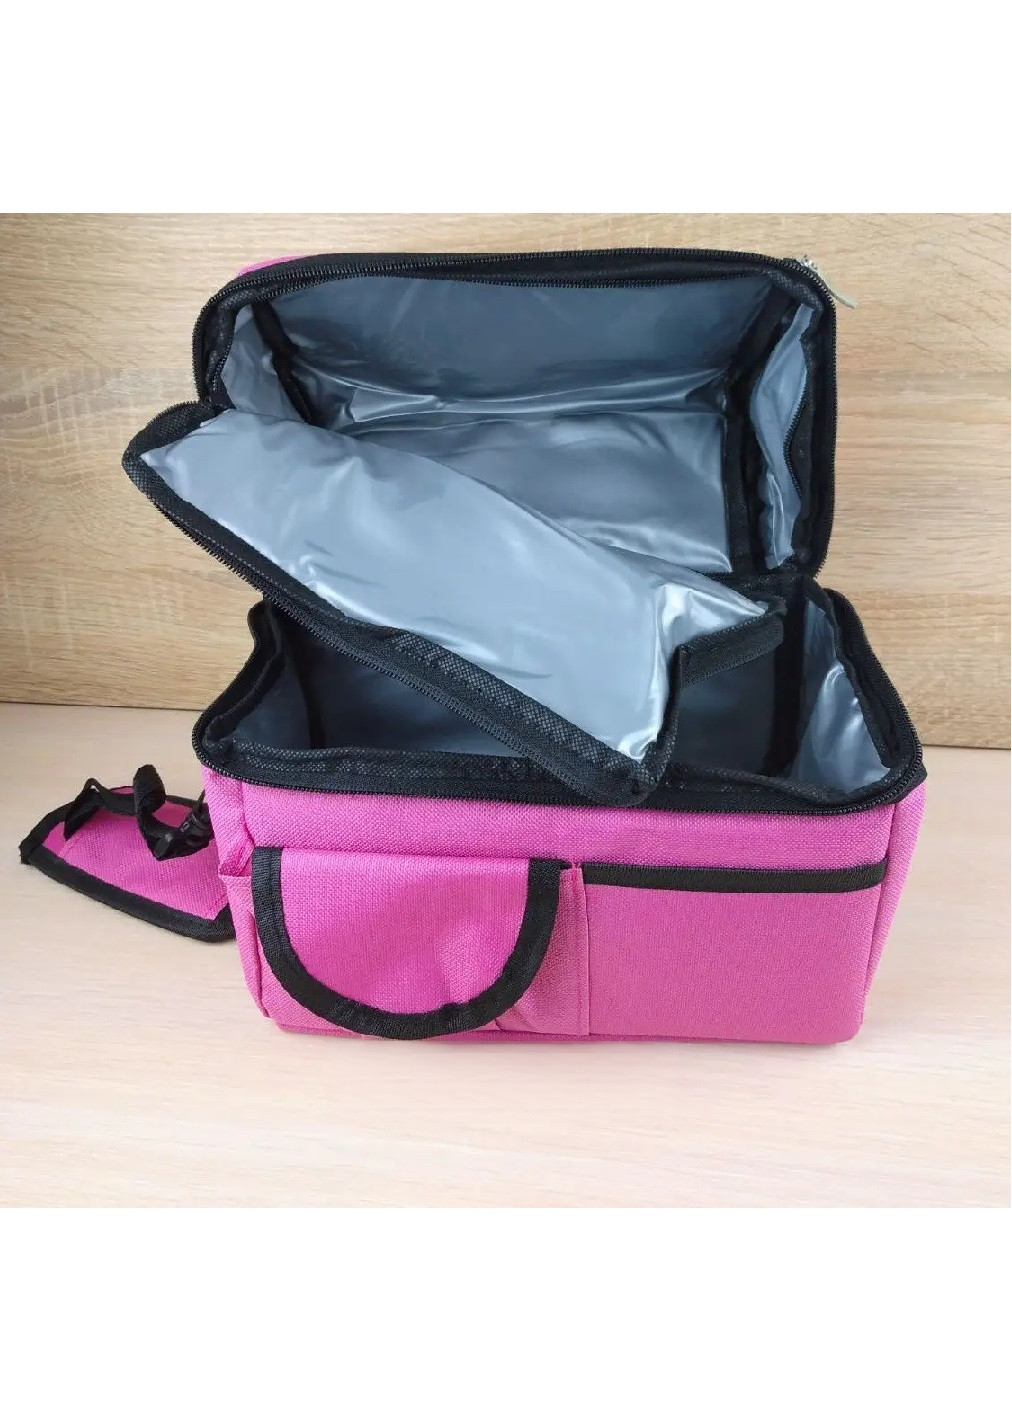 Термосумка термоизоляционная сумка компактная вместительная на молнии два термоотдела 25х24х16 см (475106-Prob) Розовая Unbranded (262083050)